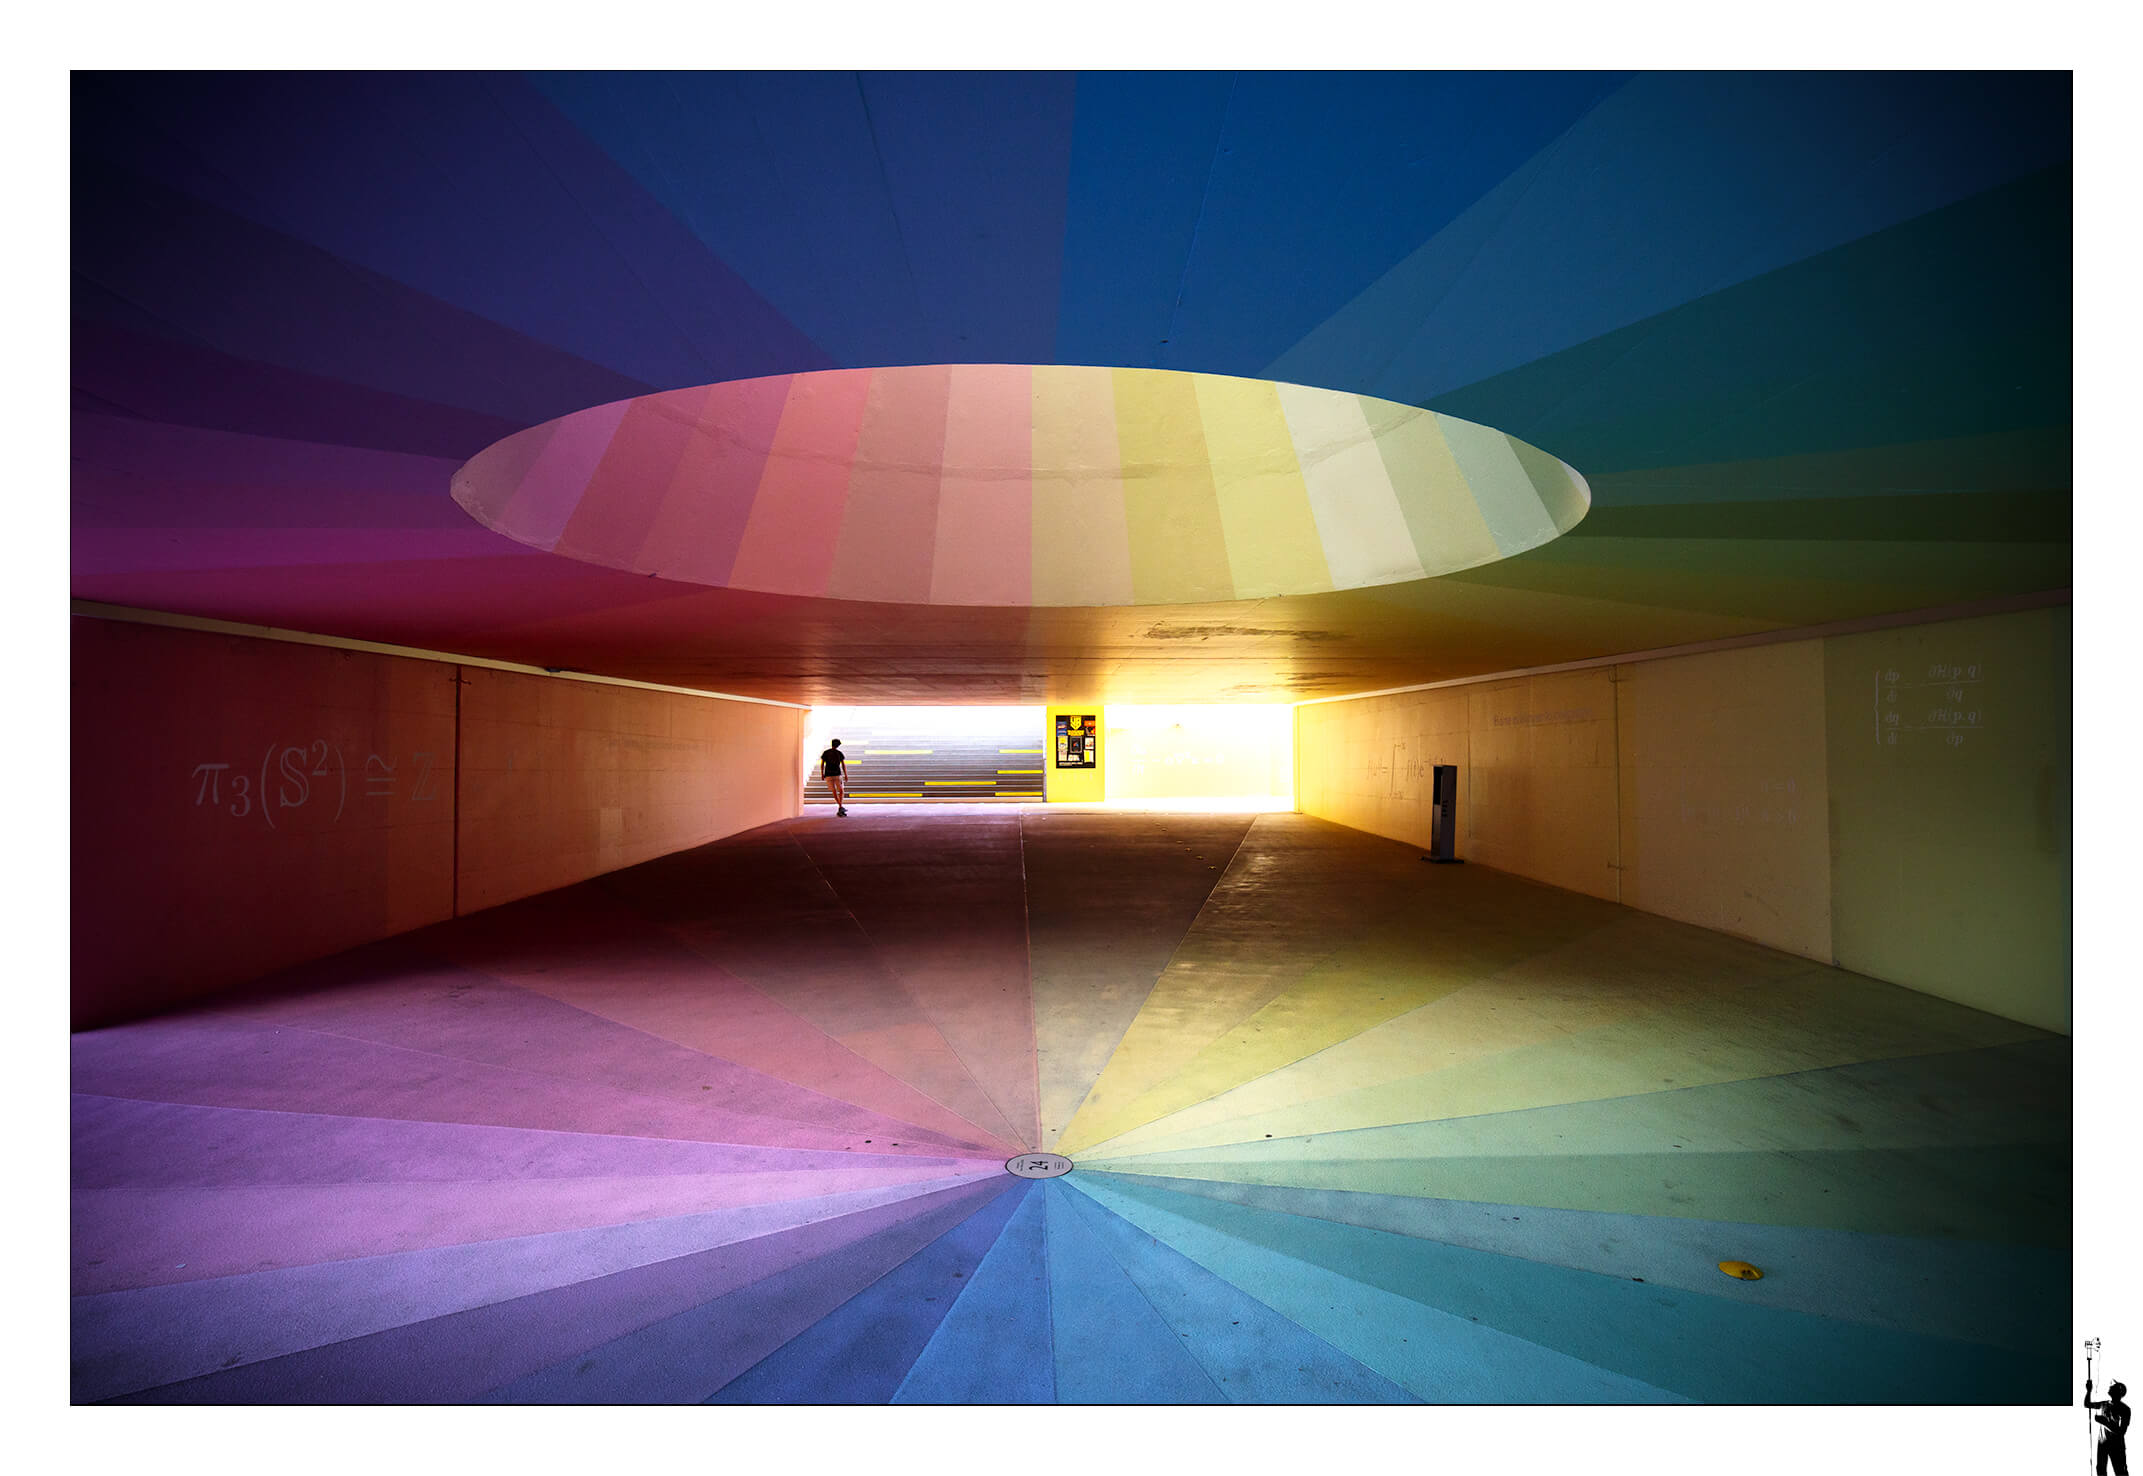 Arrêt de Métro de l'EPFL et ses multiples couleurs